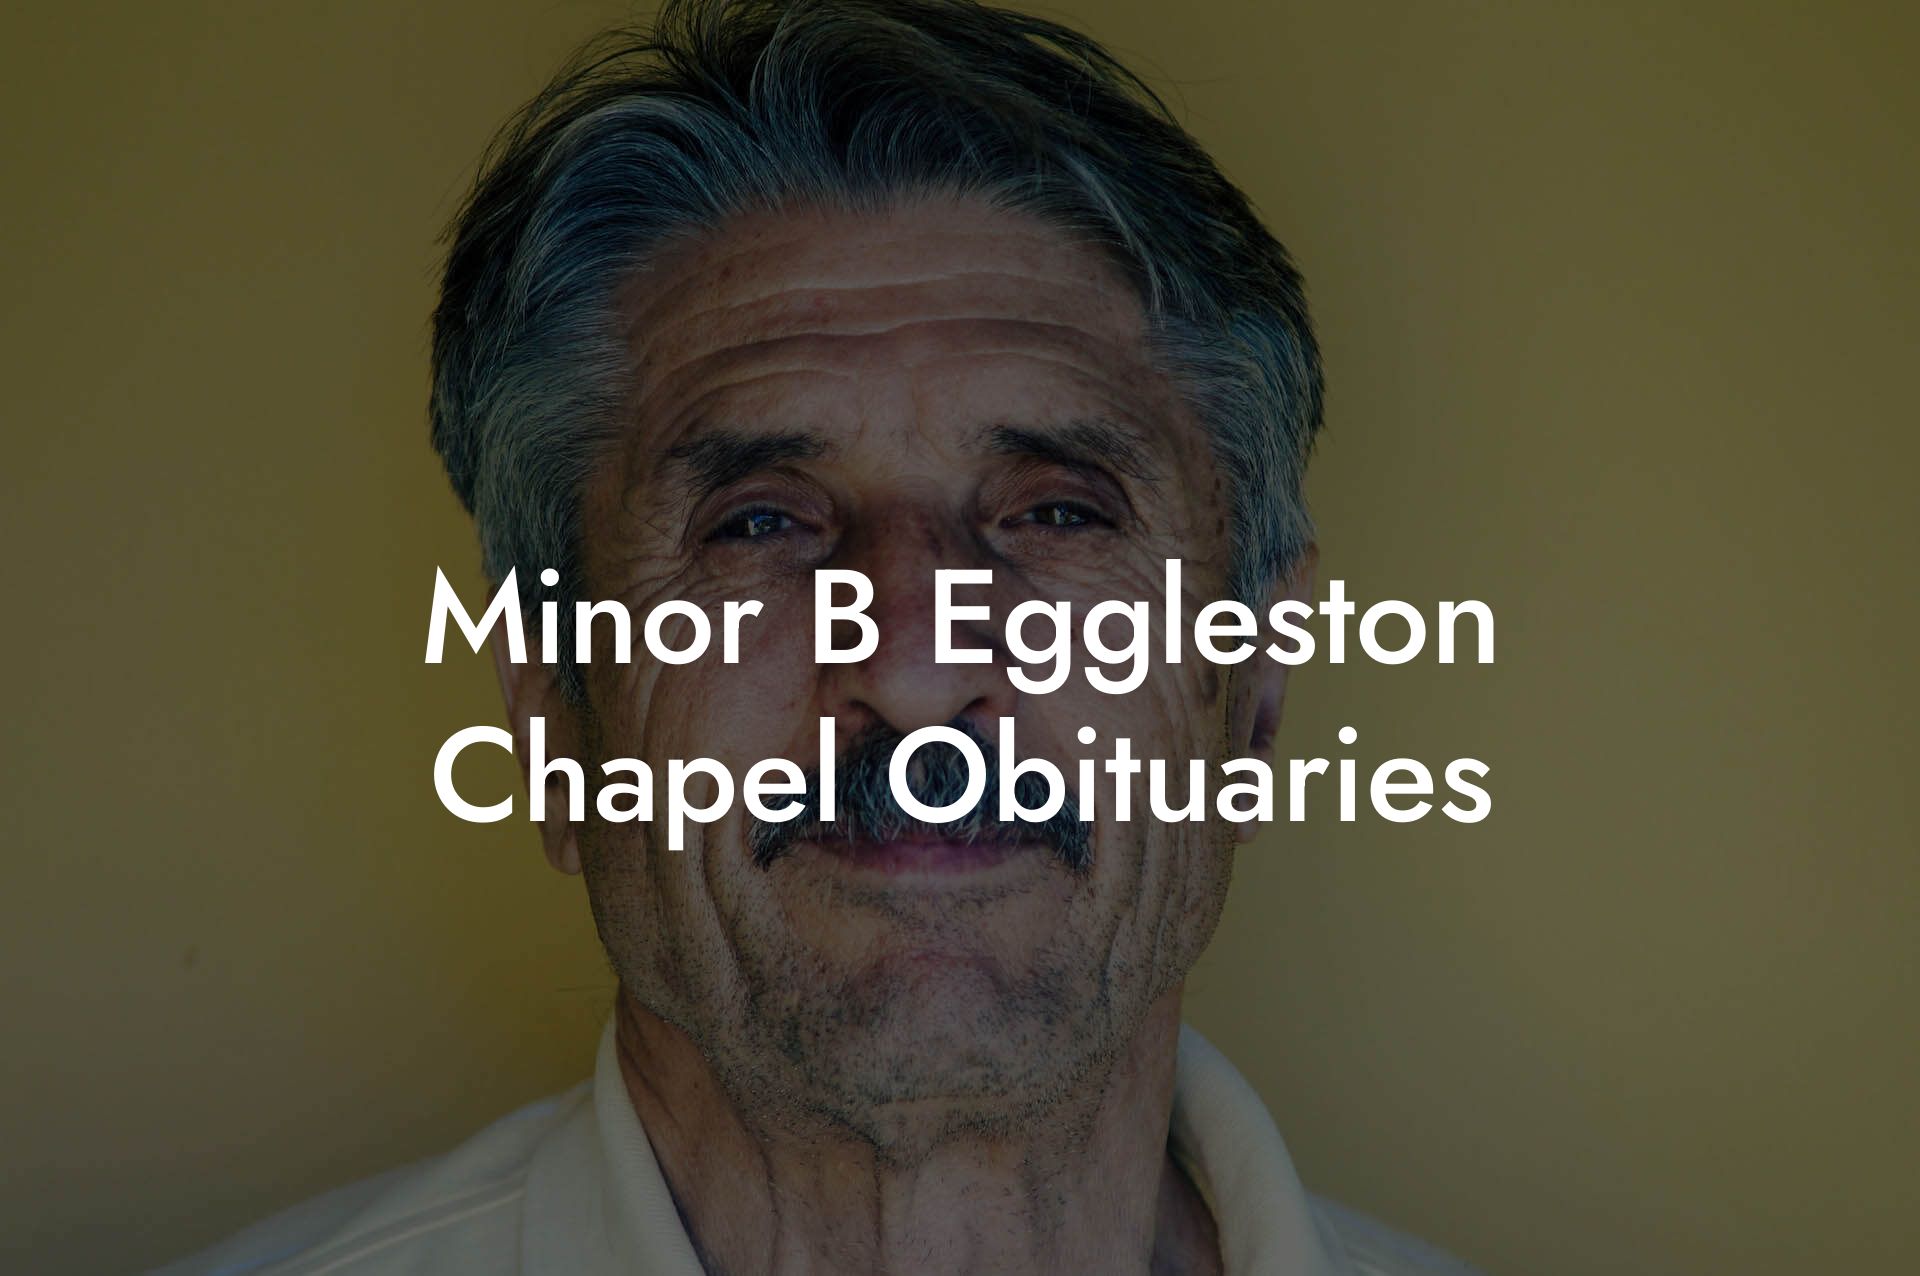 Minor B Eggleston Chapel Obituaries